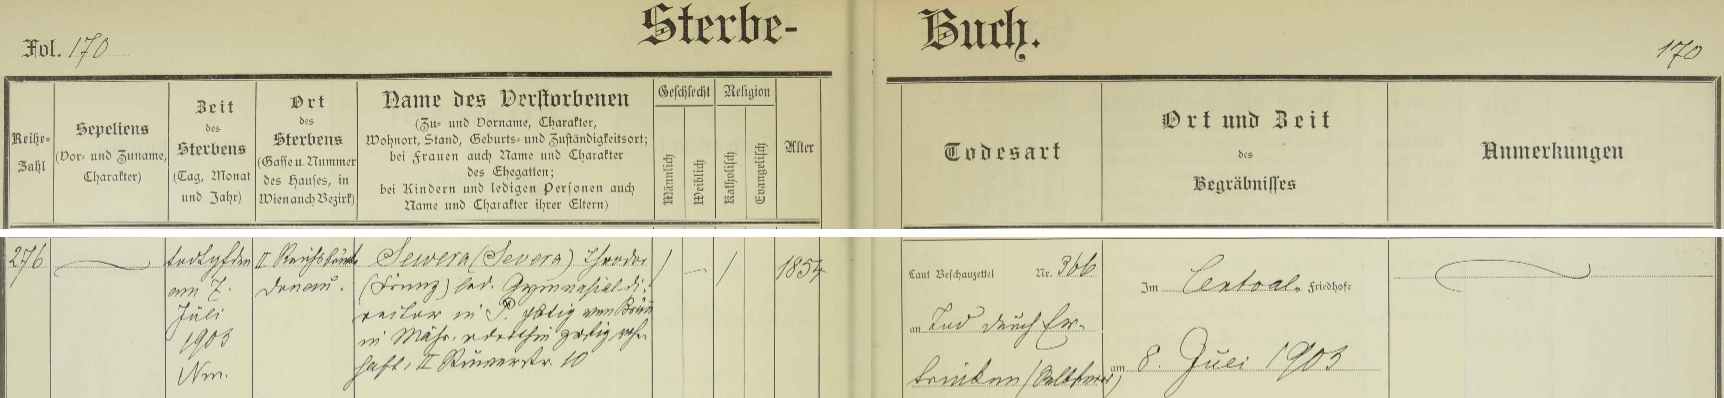 Záznam o úmrtí v knize zemřelých vídeňské farnosti pro kostele sv. Jana Nepomuckého